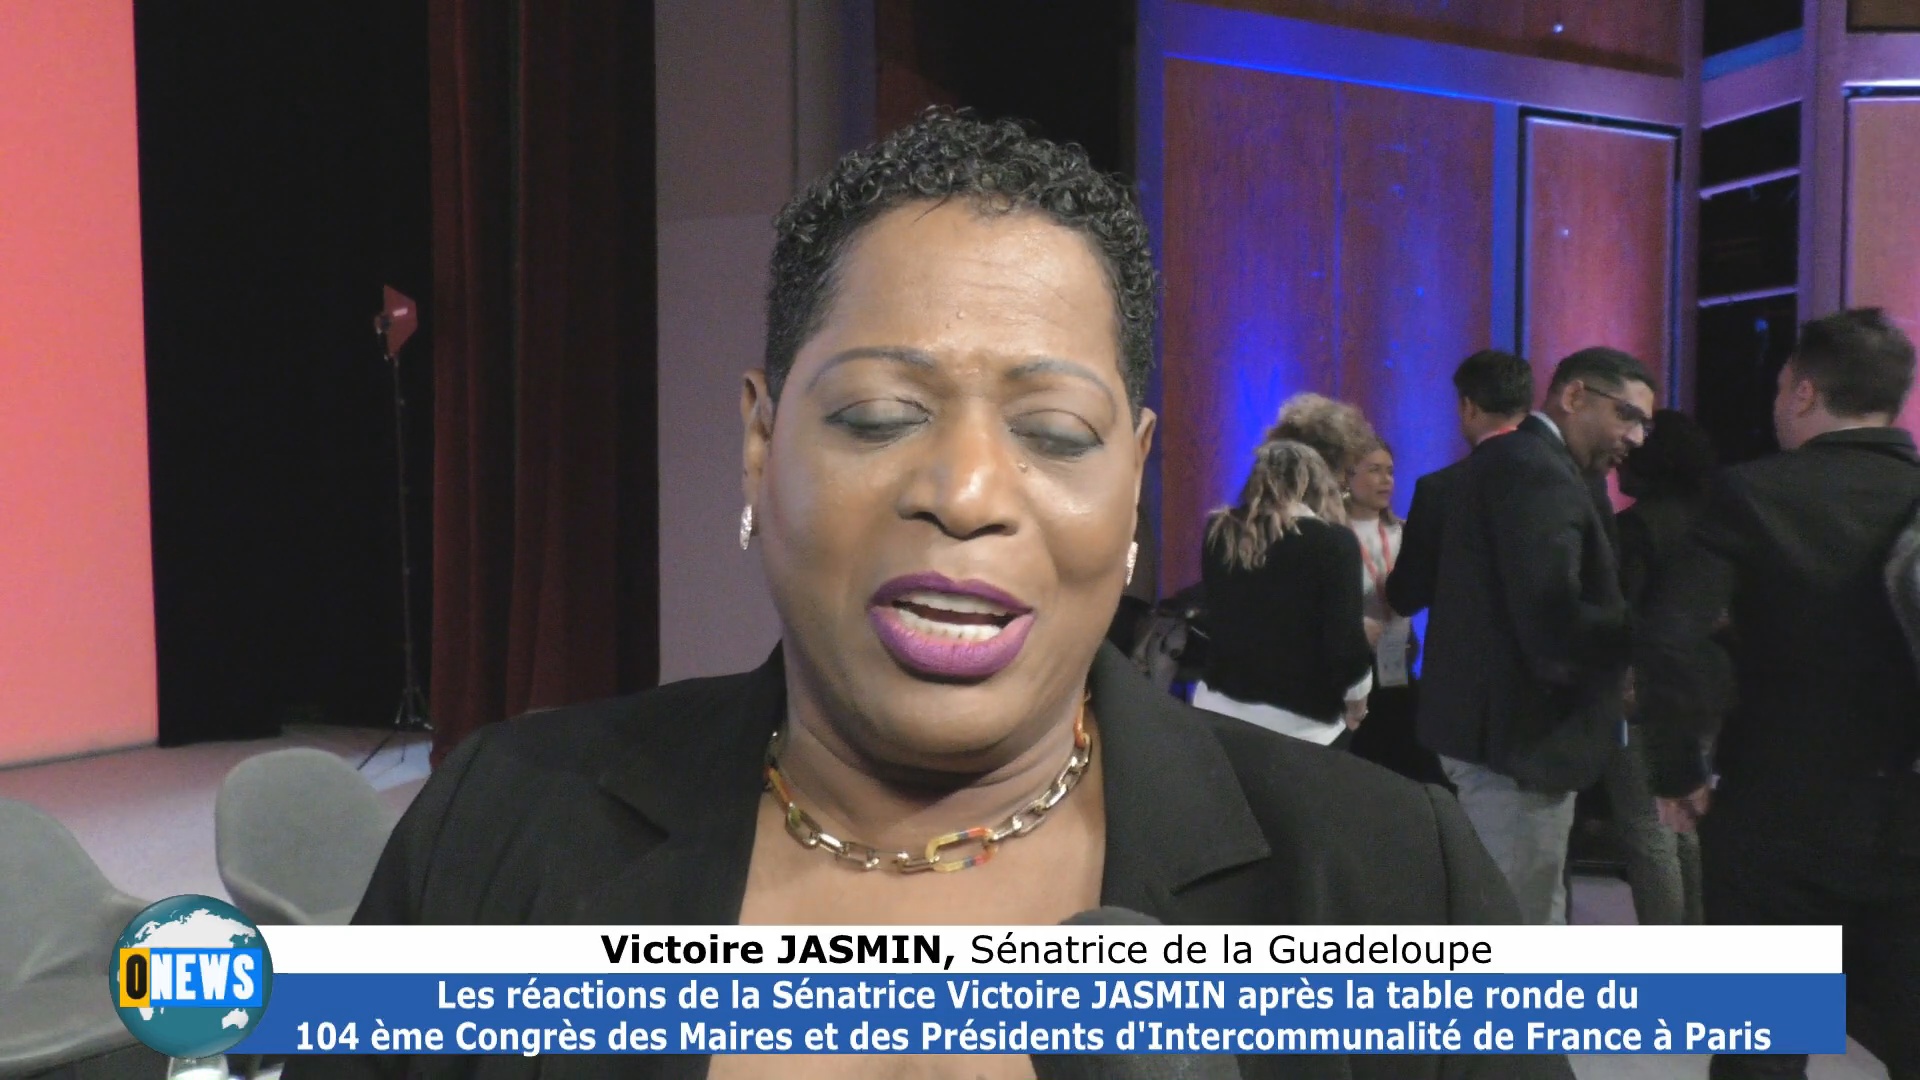 [[Vidéo] 140ème Congrès des Maires et des Présidents d Intercommunalité de France Victoire JASMIN Sénatrice de Guadeloupe